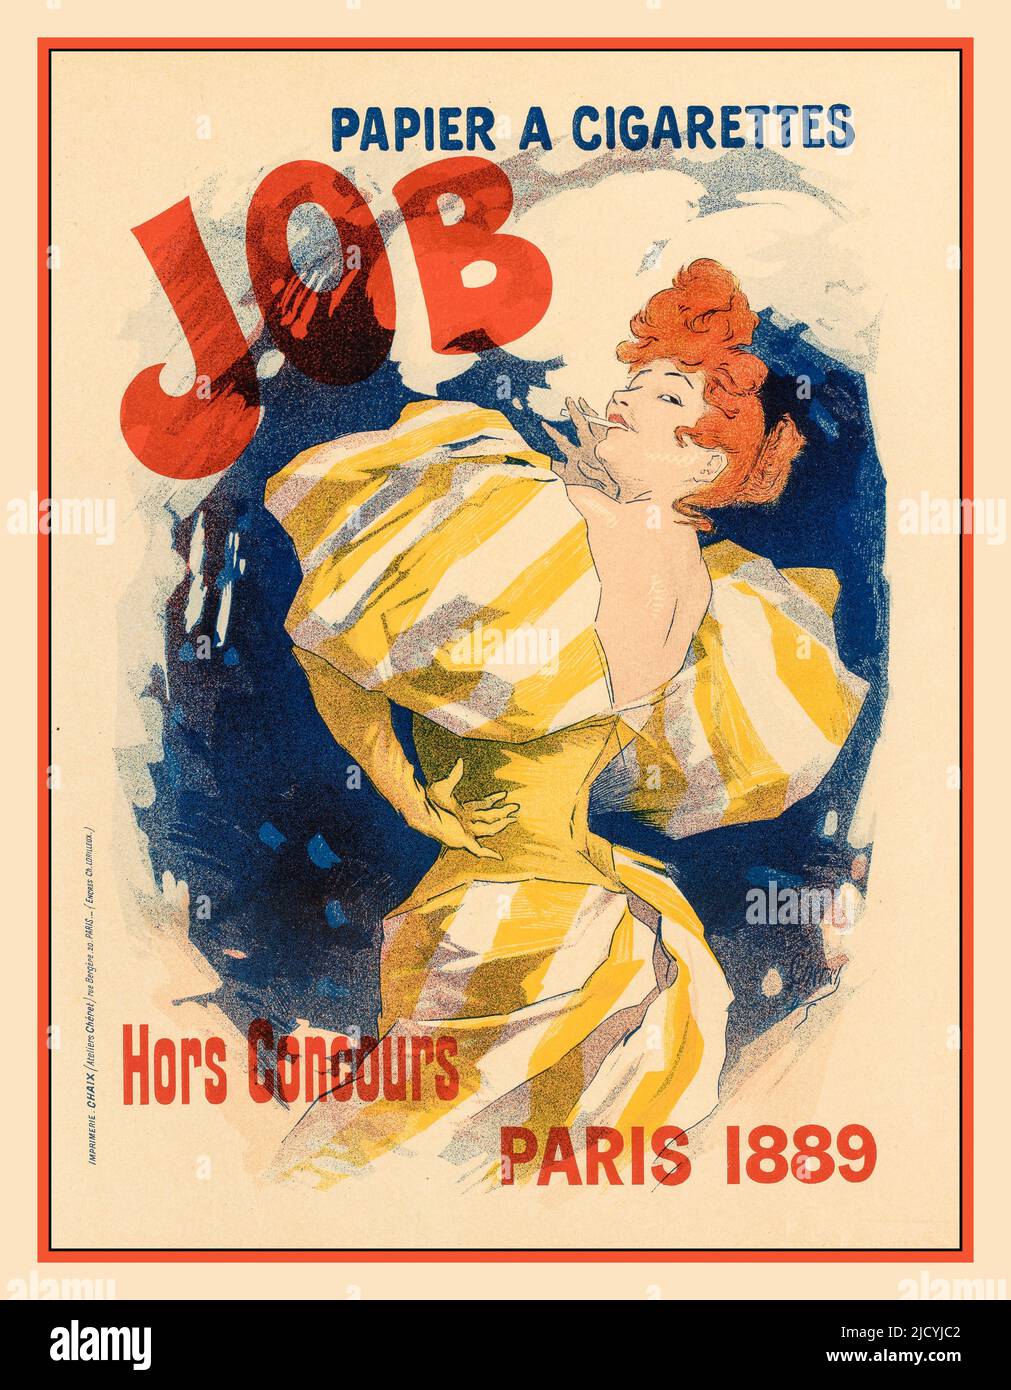 Vintage Werbeplakat 'Papier a cigarettes JOB' 'Hors Concours Paris 1889' ‘unvergleichliches, unvergleichliches Paris‘ Künstler Jules Chéret Maîtres de l'affiche Jules Chéret war ein renommierter französischer Lithograph, der Jugendstilplakate für Musikhallen wie Folies-Bergère und Moulin Rouge produzierte. Geboren am 31. Mai 1836 in Paris, Frankreich, begann er im Alter von 13 Jahren eine Lehre bei einem Lithografen und setzte seine Ausbildung an der École des Arts Décoratifs fort. Paris Frankreich Stockfoto